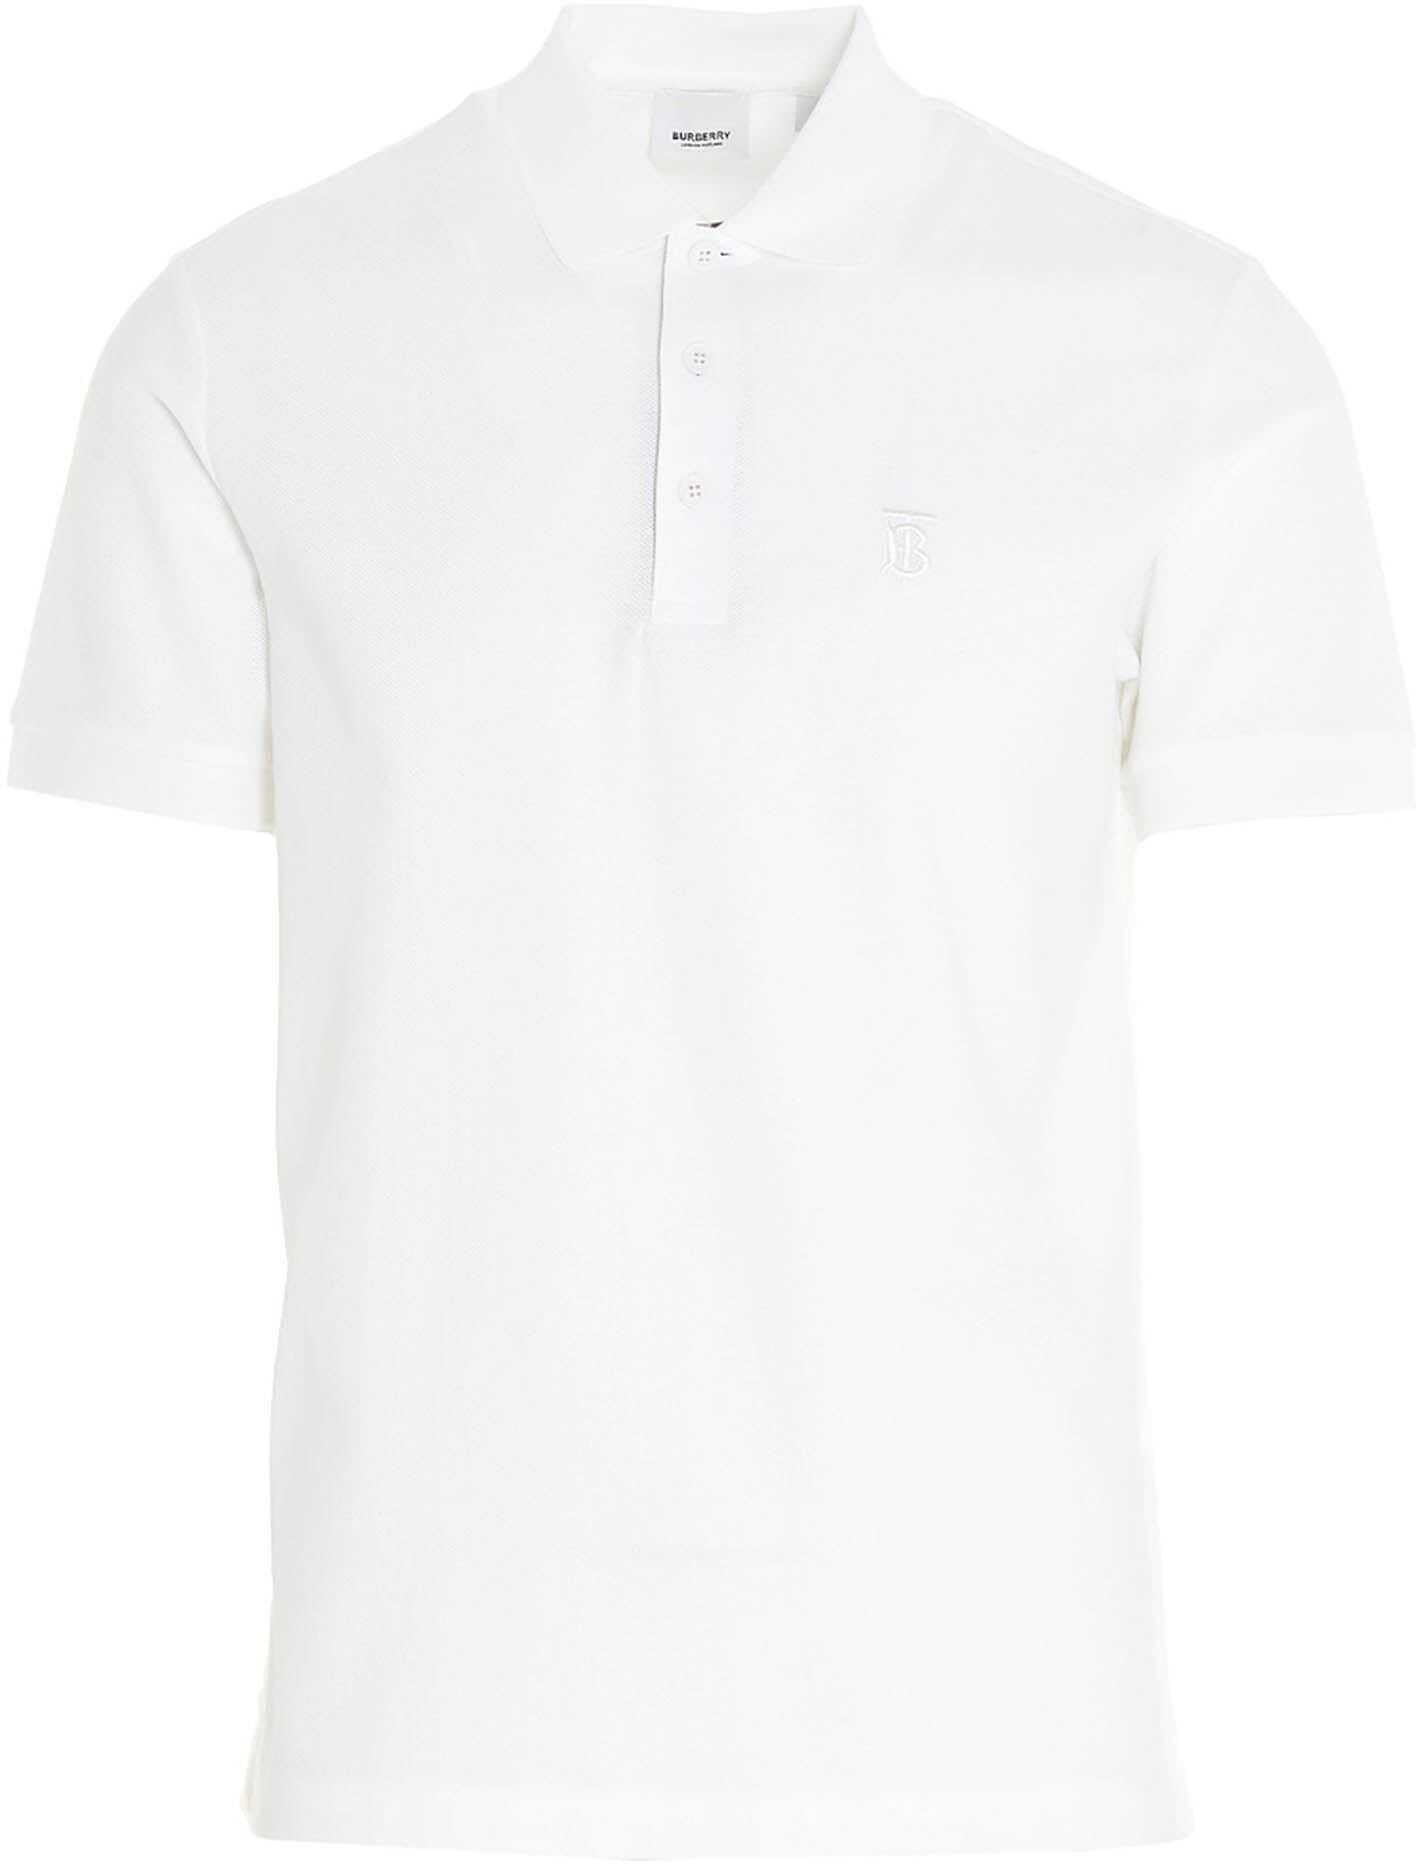 Burberry Eddie Polo Shirt In White Piqué 8014005 White